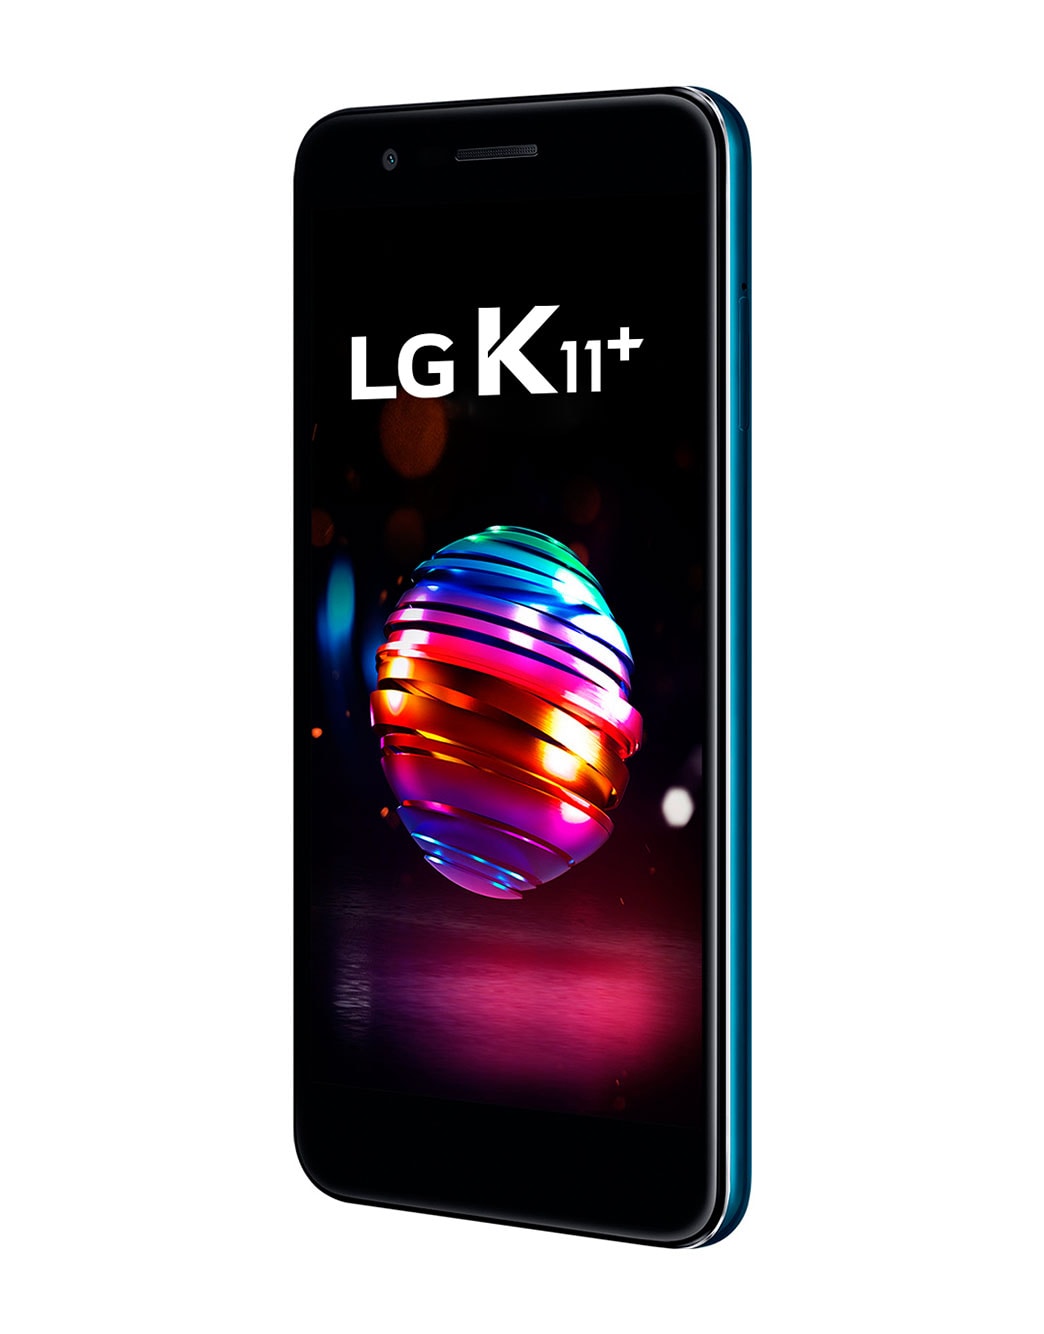 Evaluación radio filtrar LG K11+ | LG Argentina